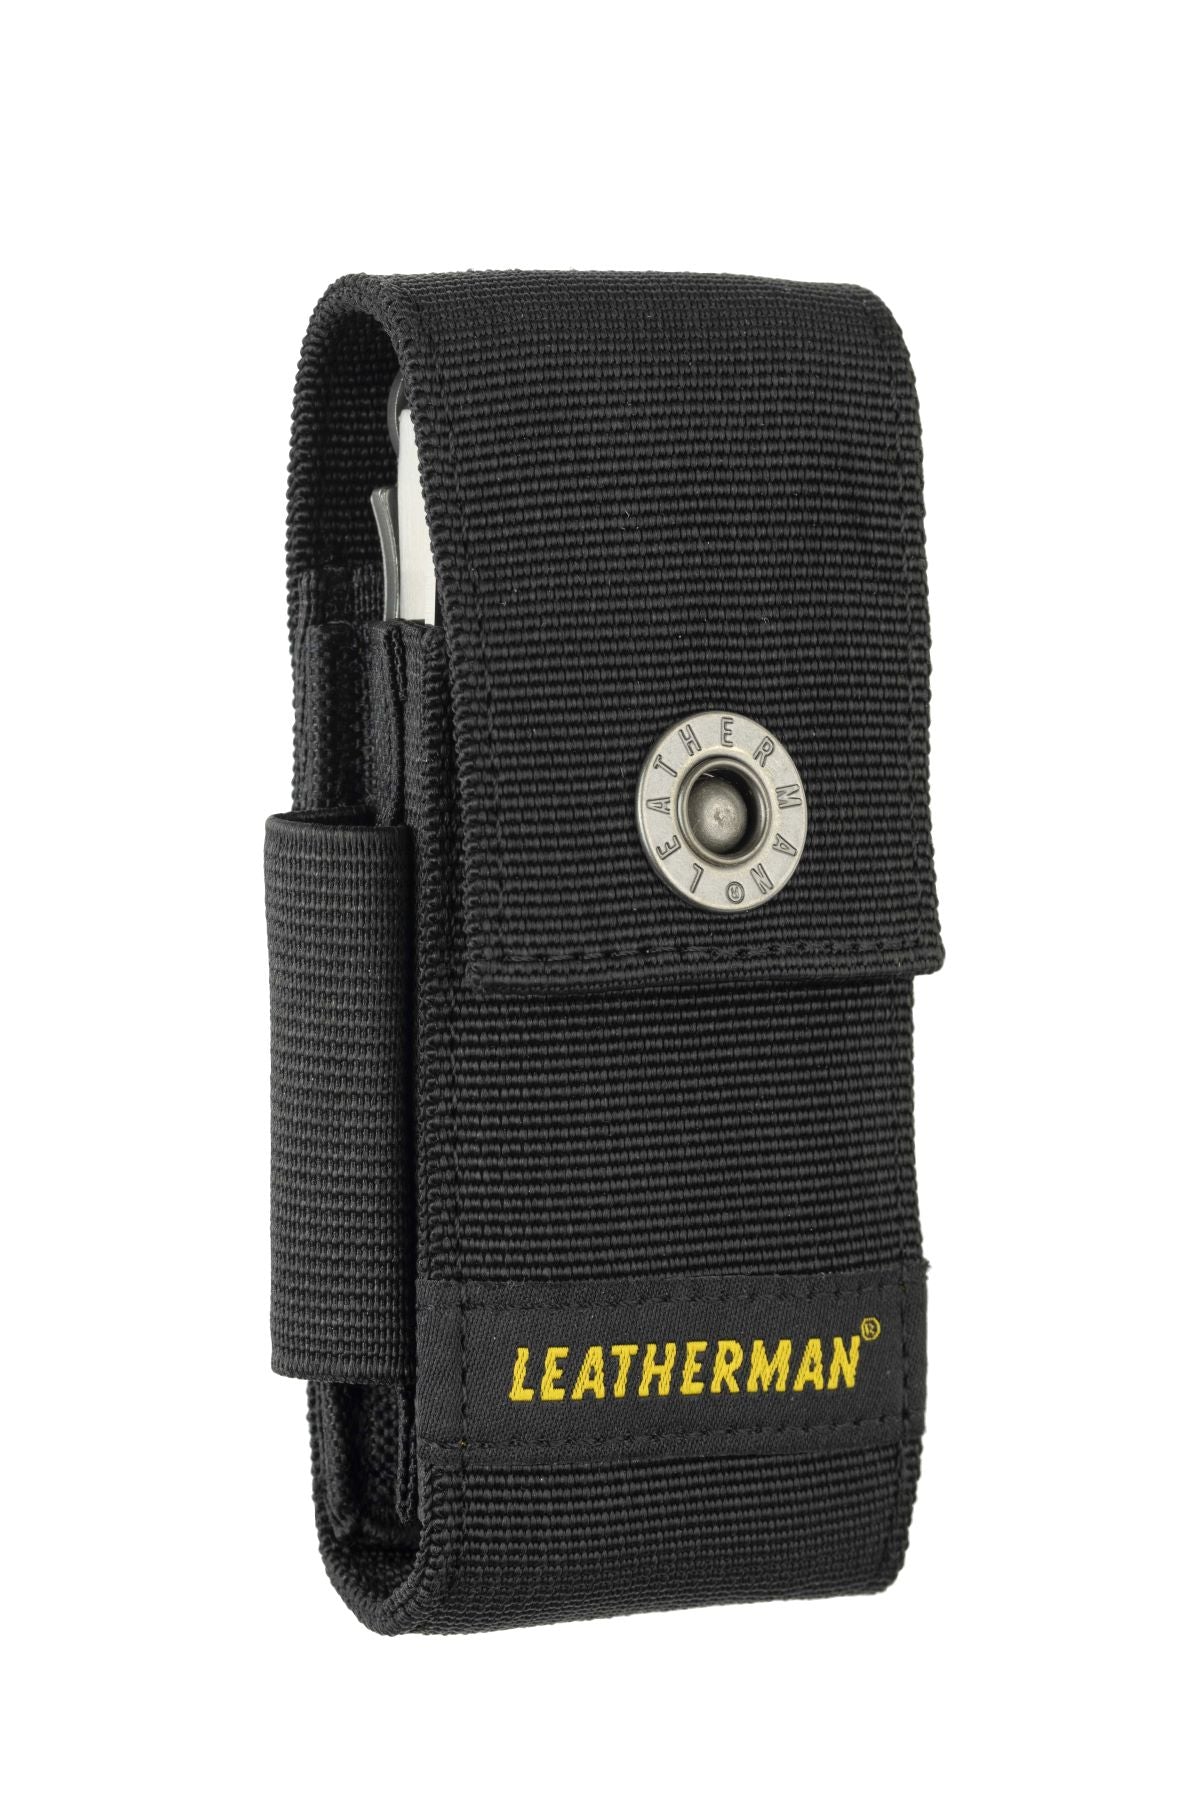 Leatherman Surge Pocket Knife